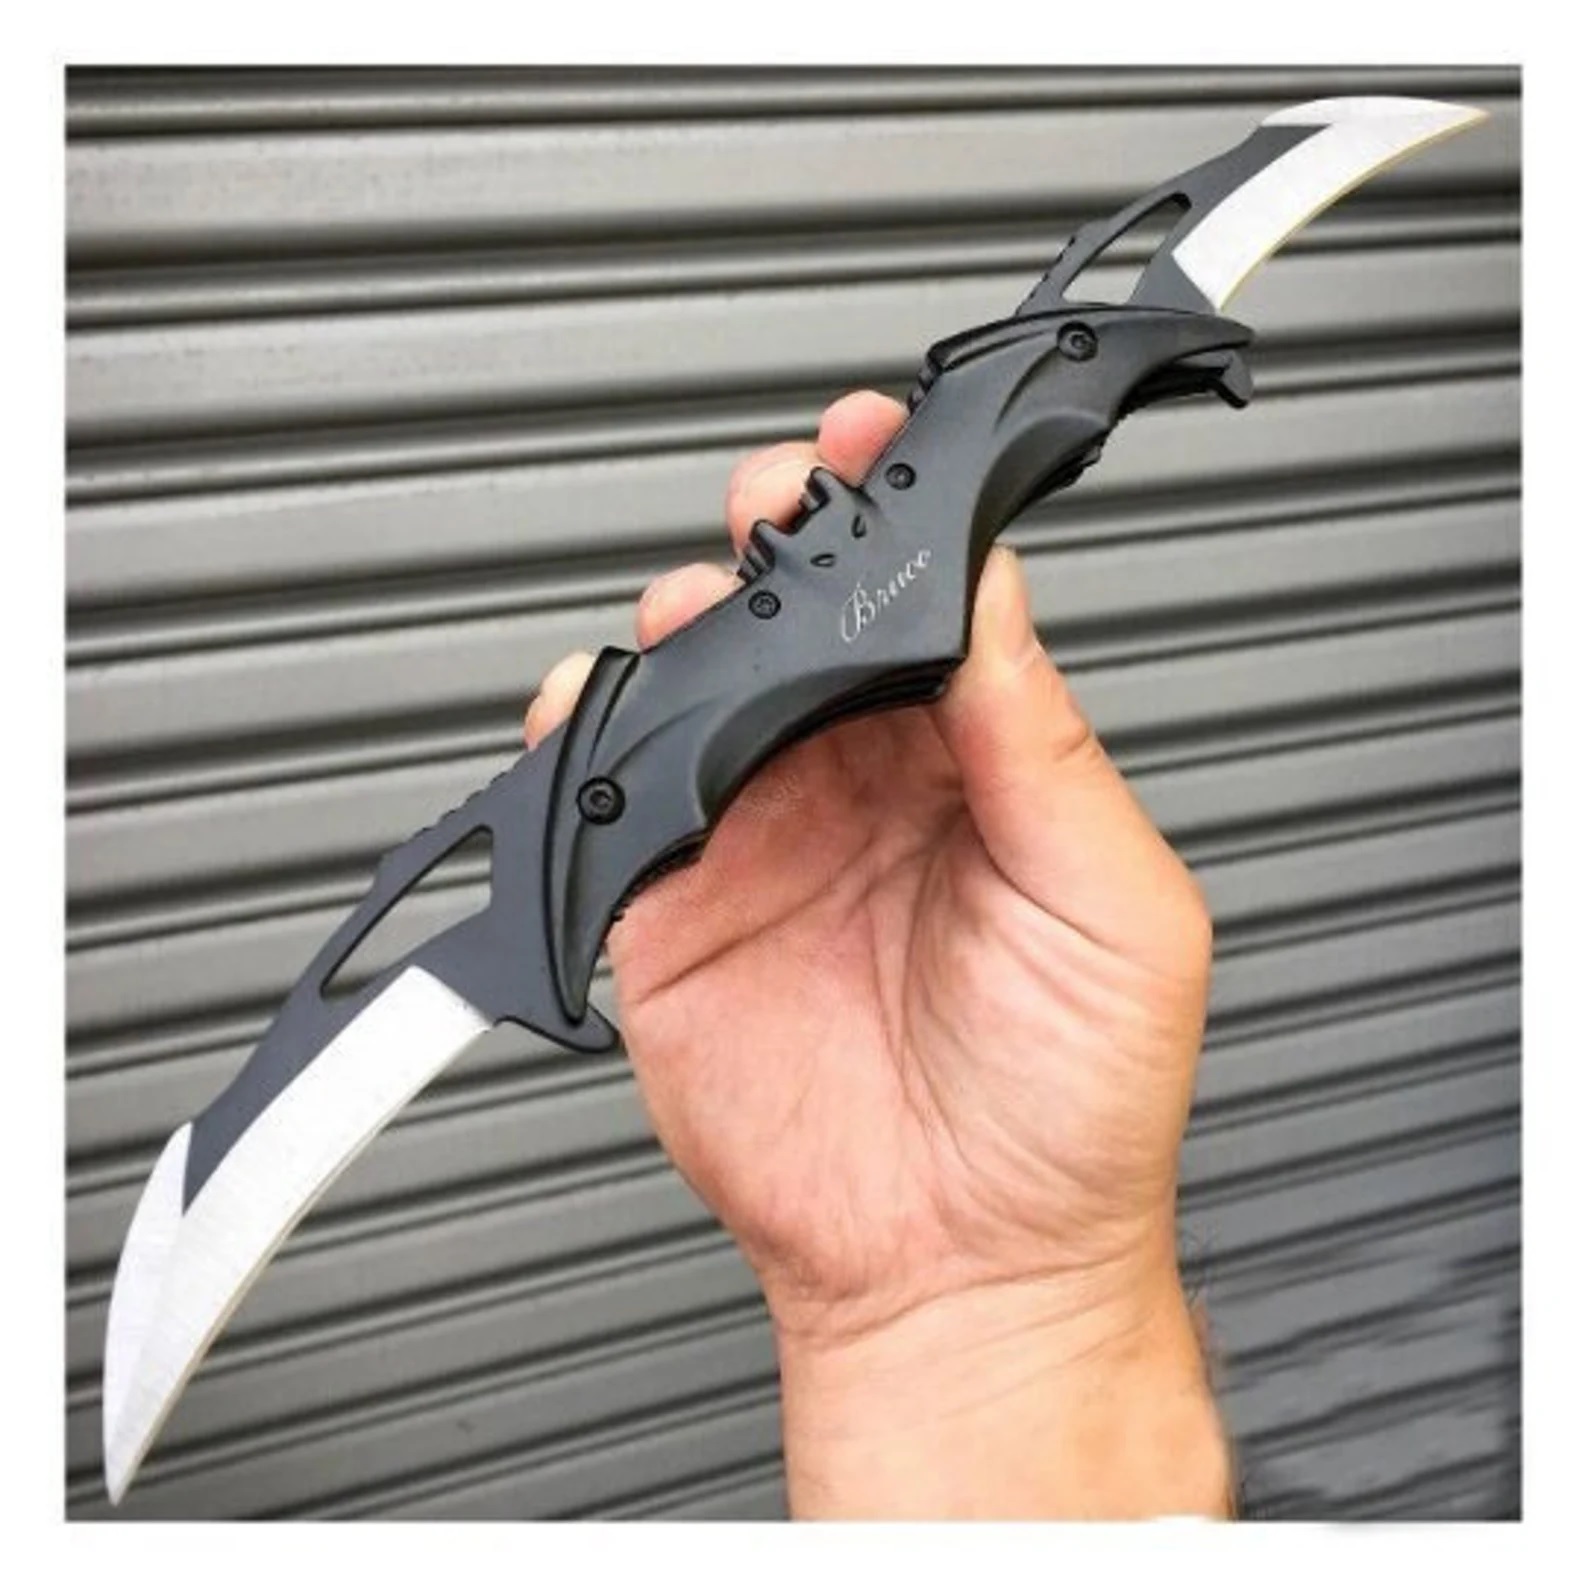 A pocketknife shaped like a Batarang